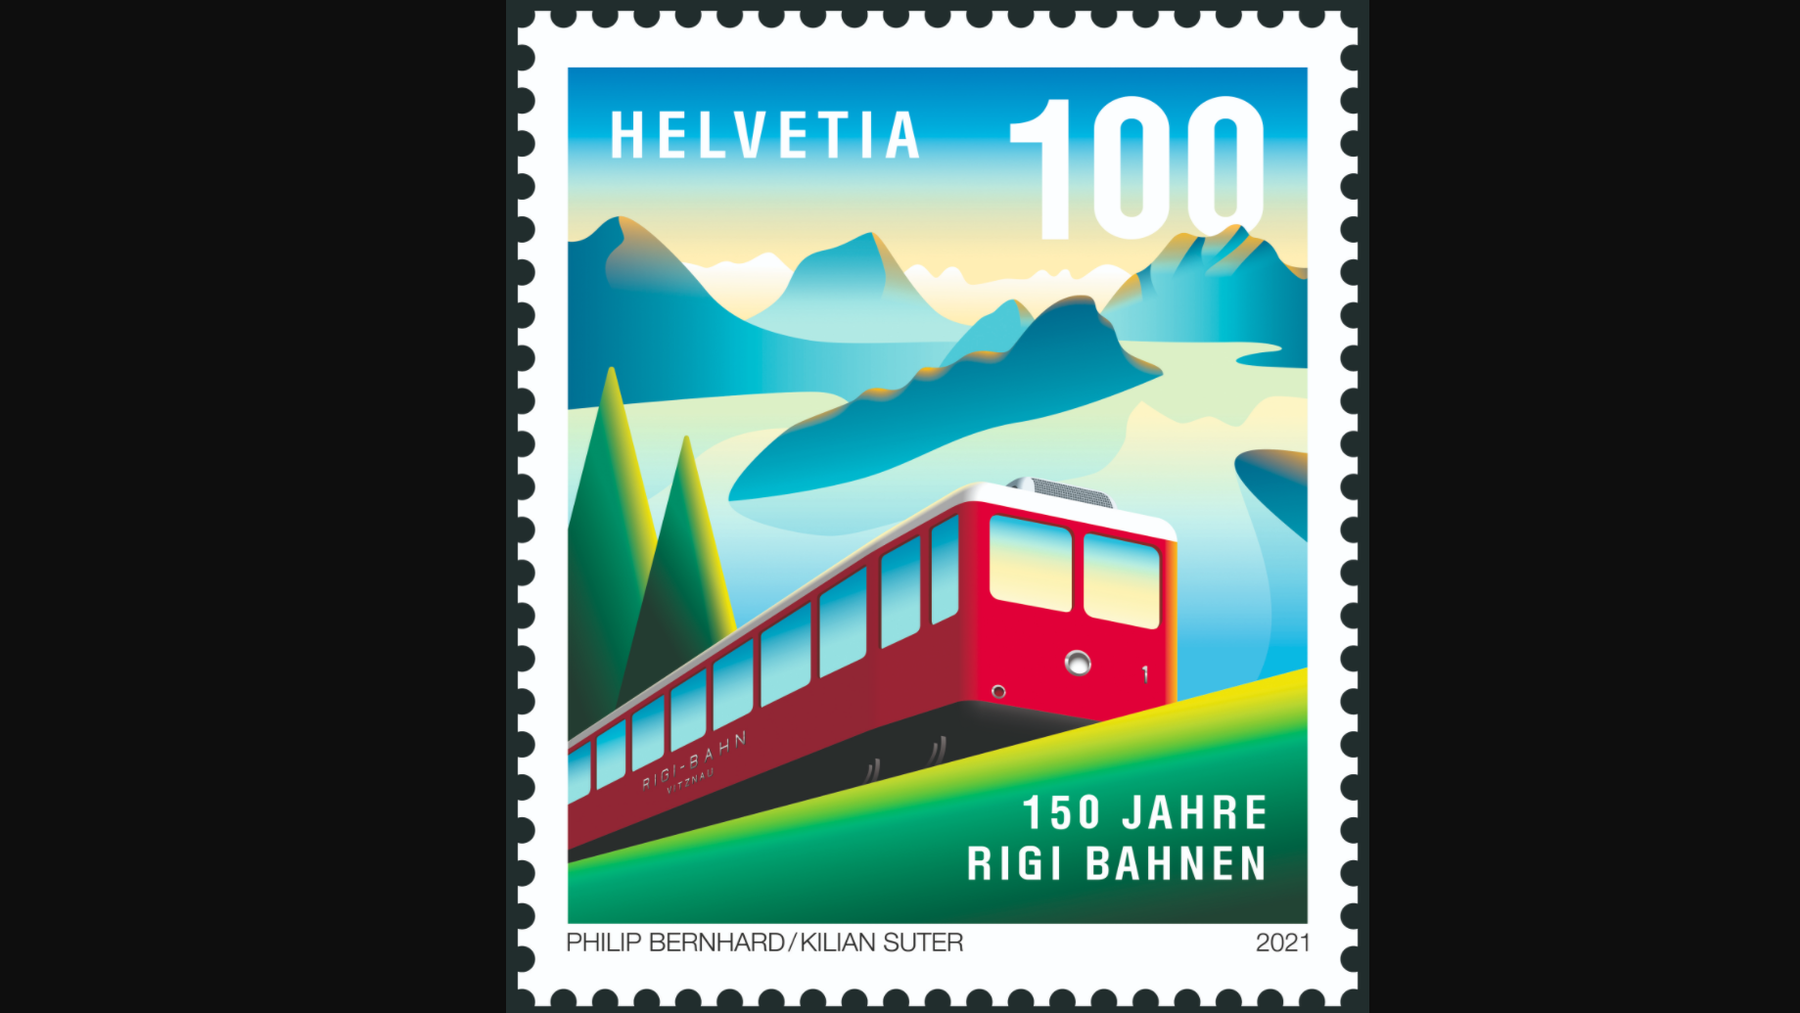 Die neue Briefmarke zum Jubiläum der Rigi Bahnen. 